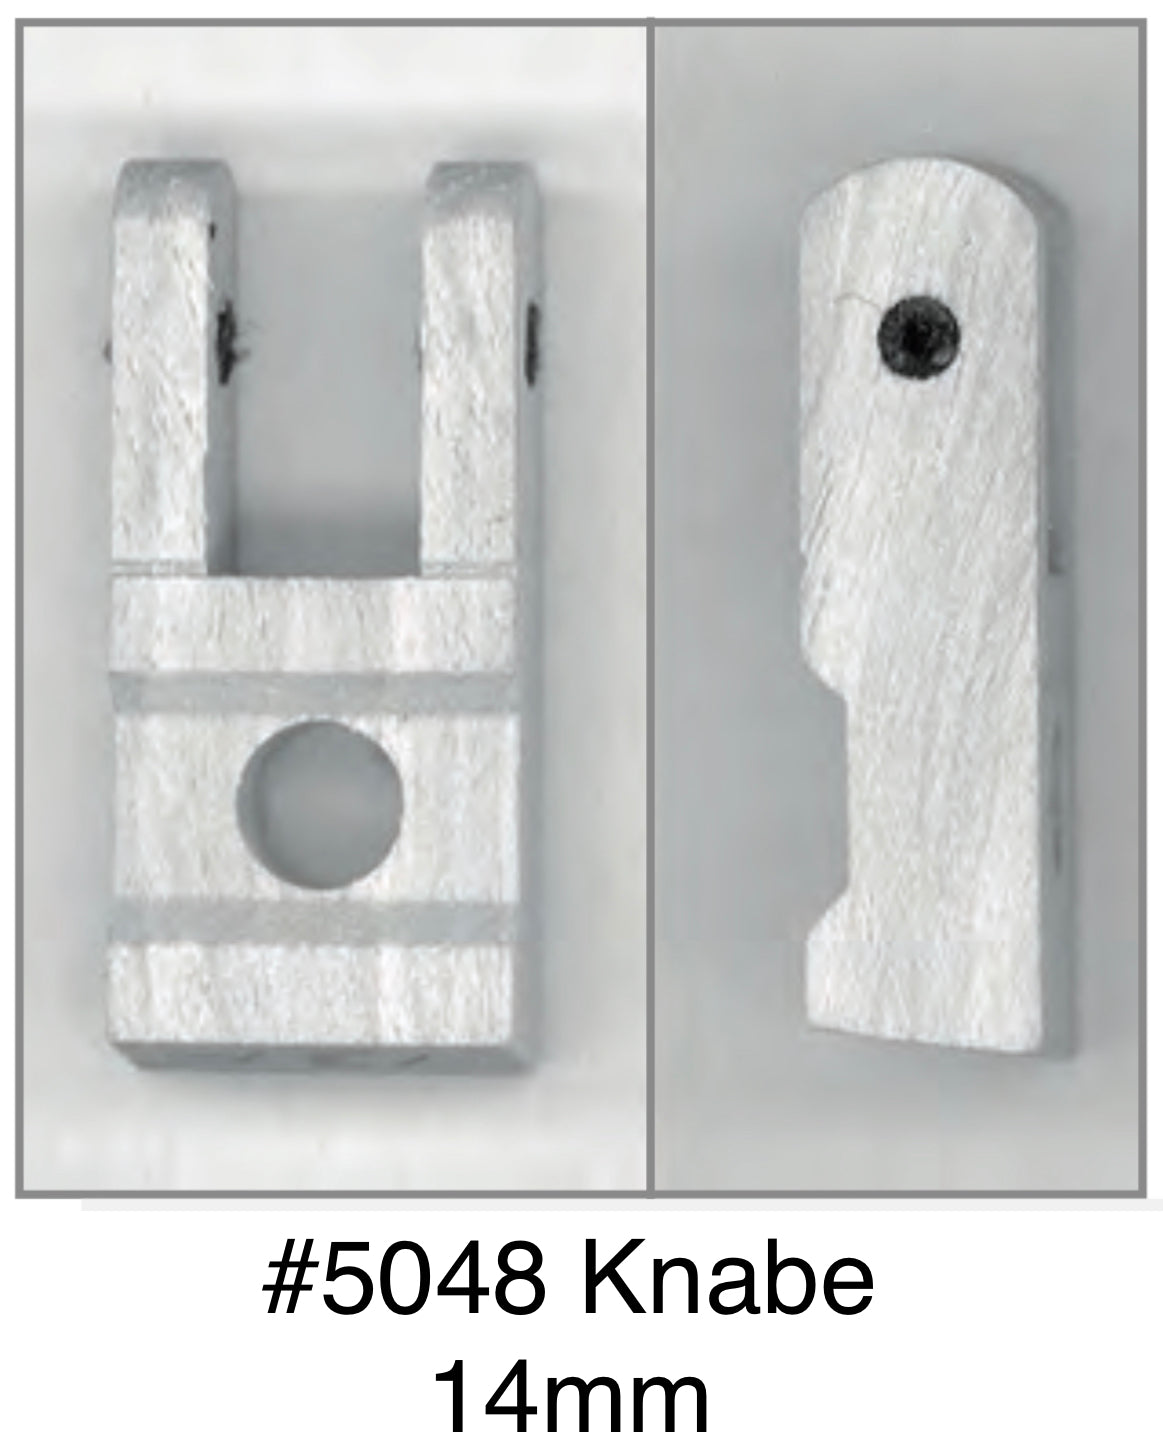 Whippen flanges for Knabe, 14mm